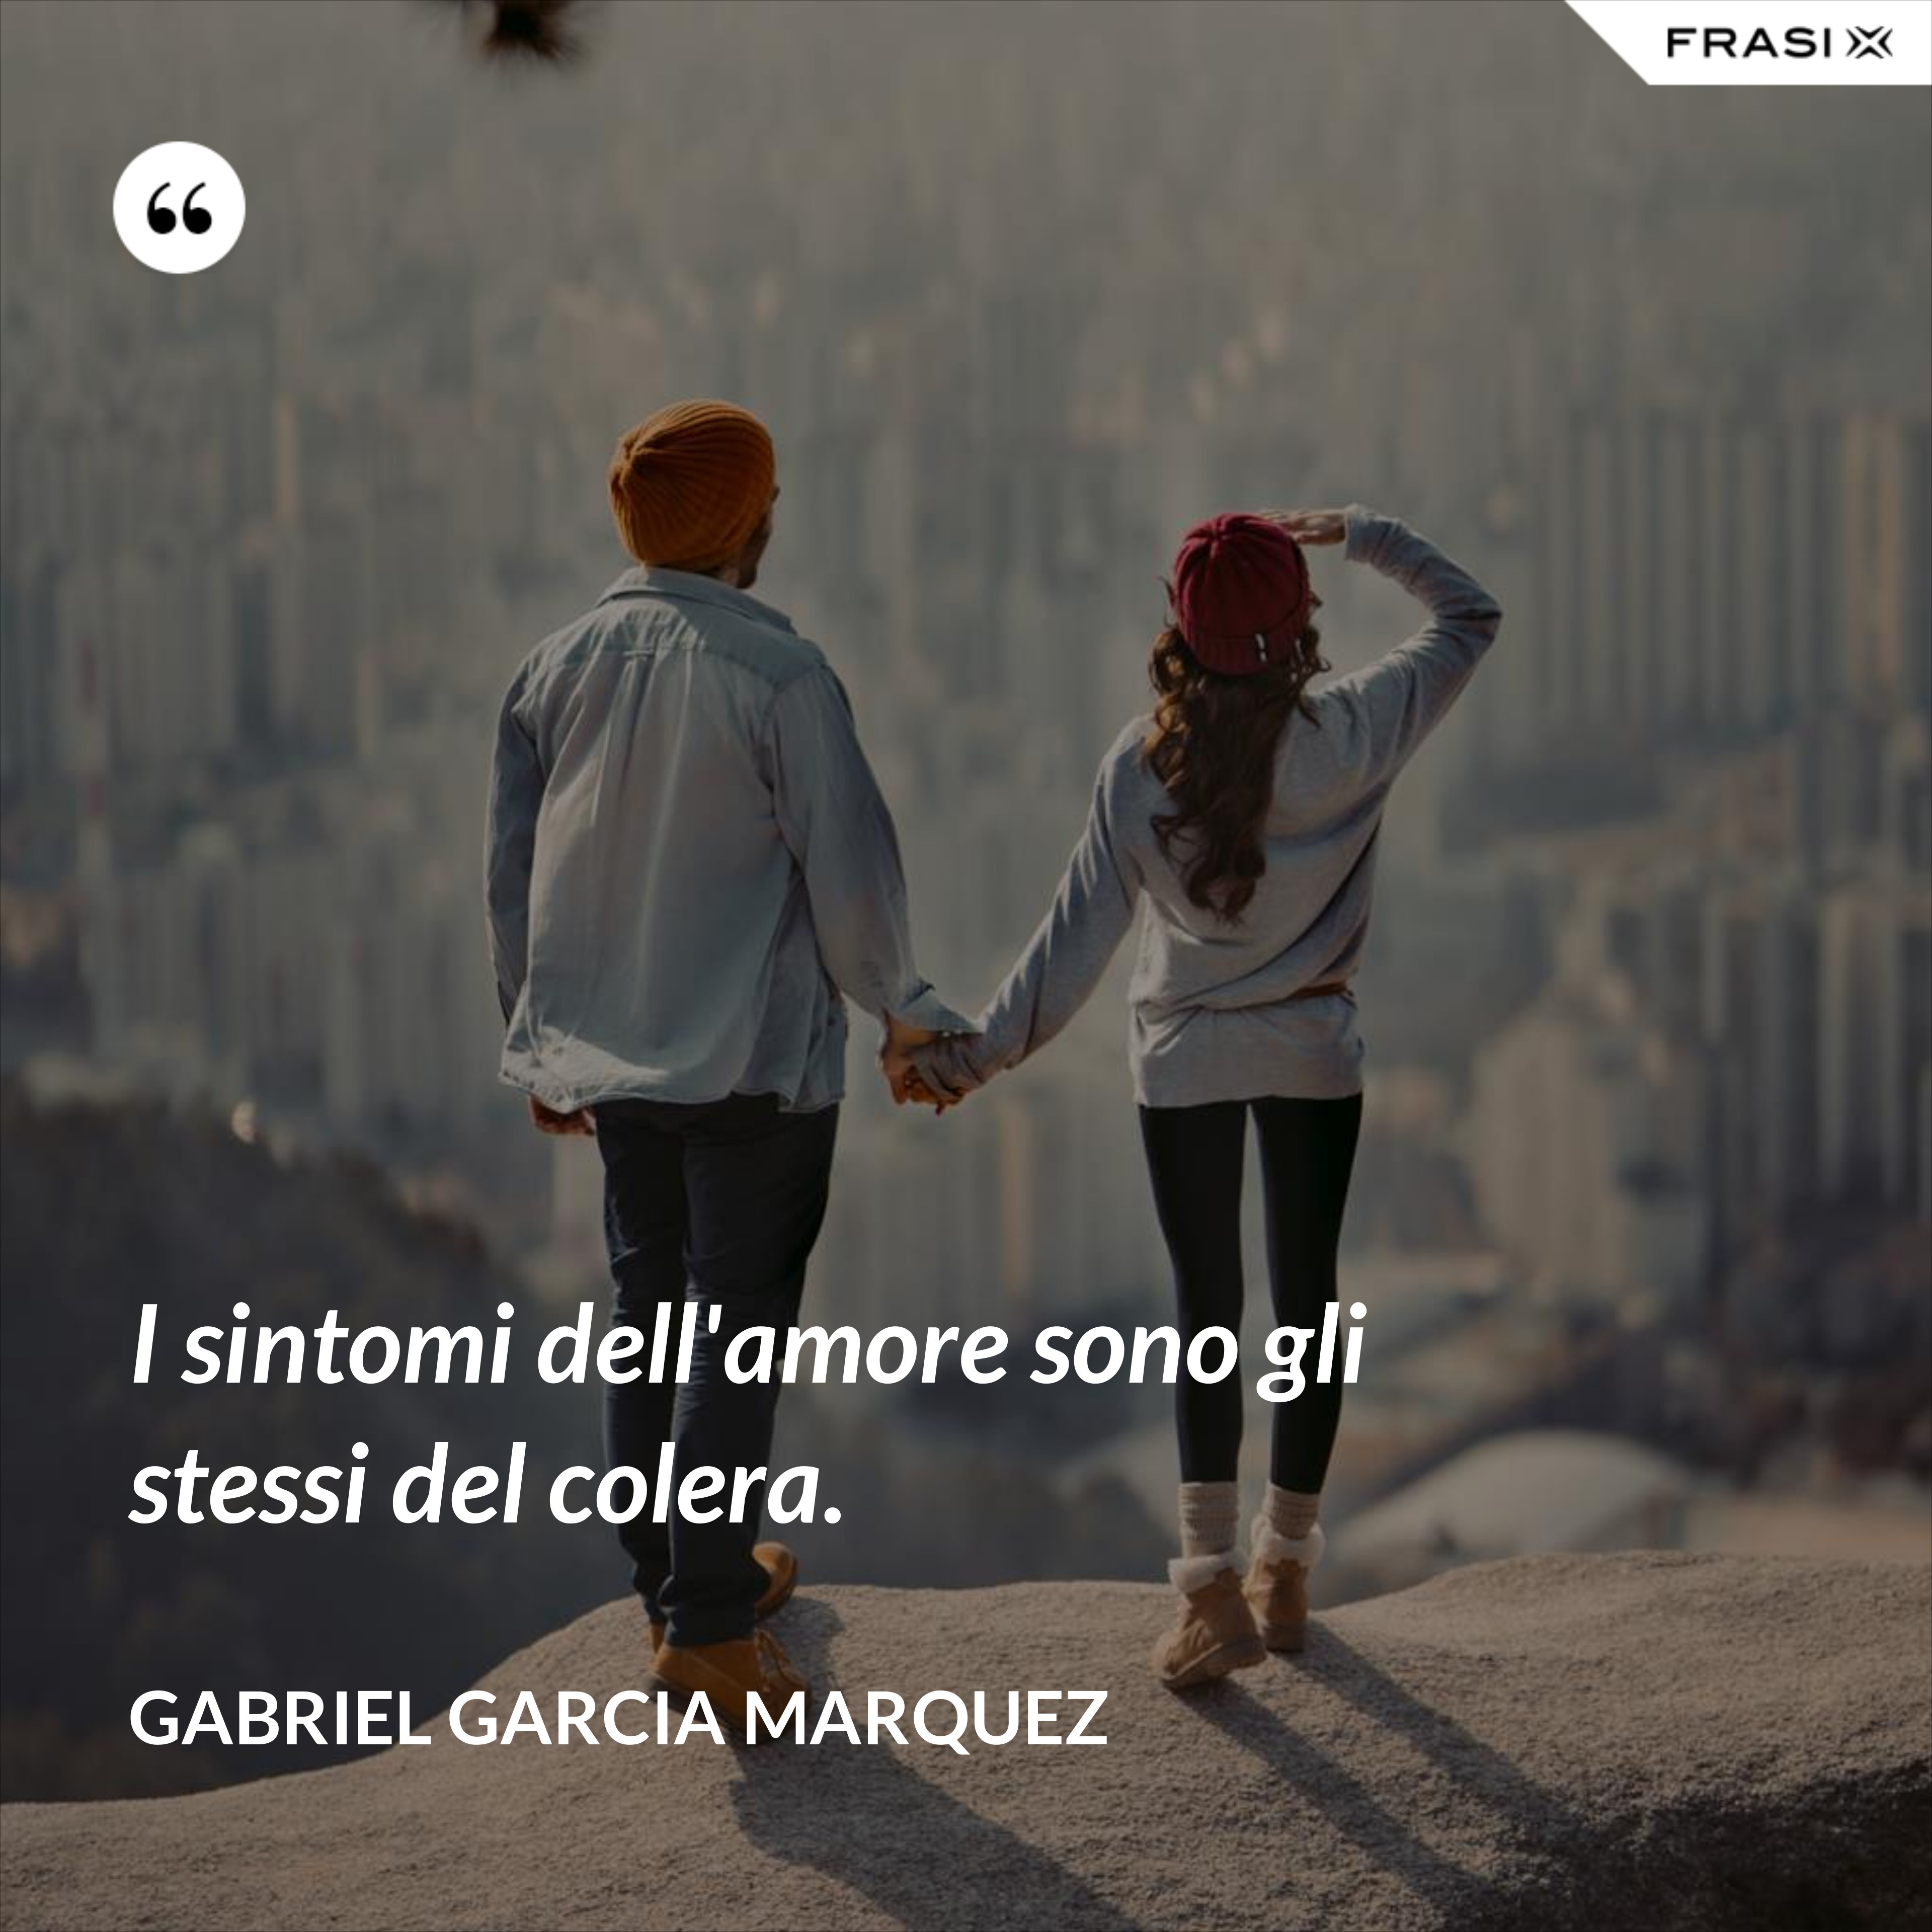 I sintomi dell'amore sono gli stessi del colera. - Gabriel Garcia Marquez